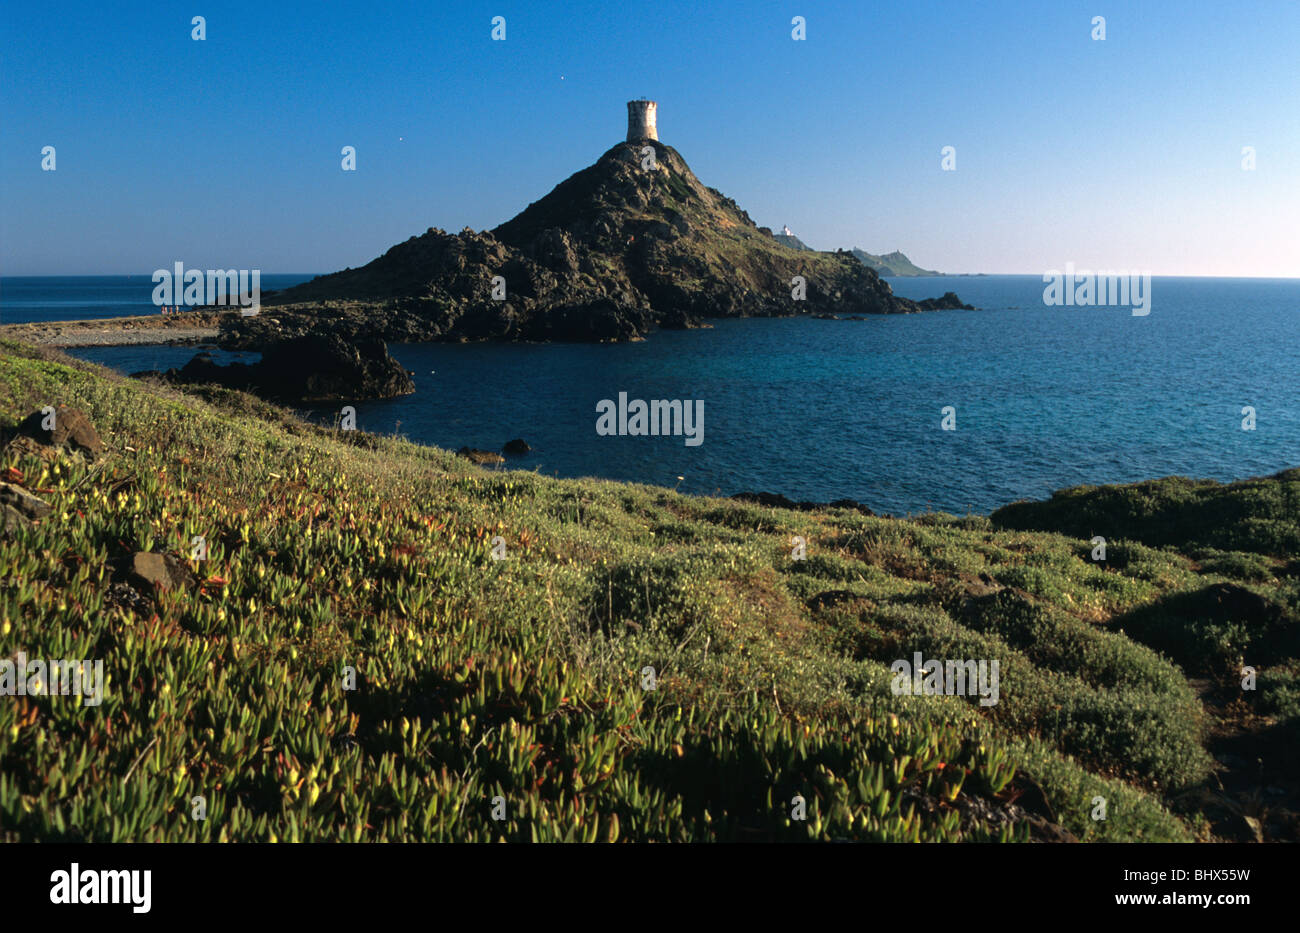 Parata Point ou Pointe, pointe de la Parata, avec Tour Génoise,et des Îles Îles Sanguinaires, près d'Ajaccio, Corse, France Banque D'Images